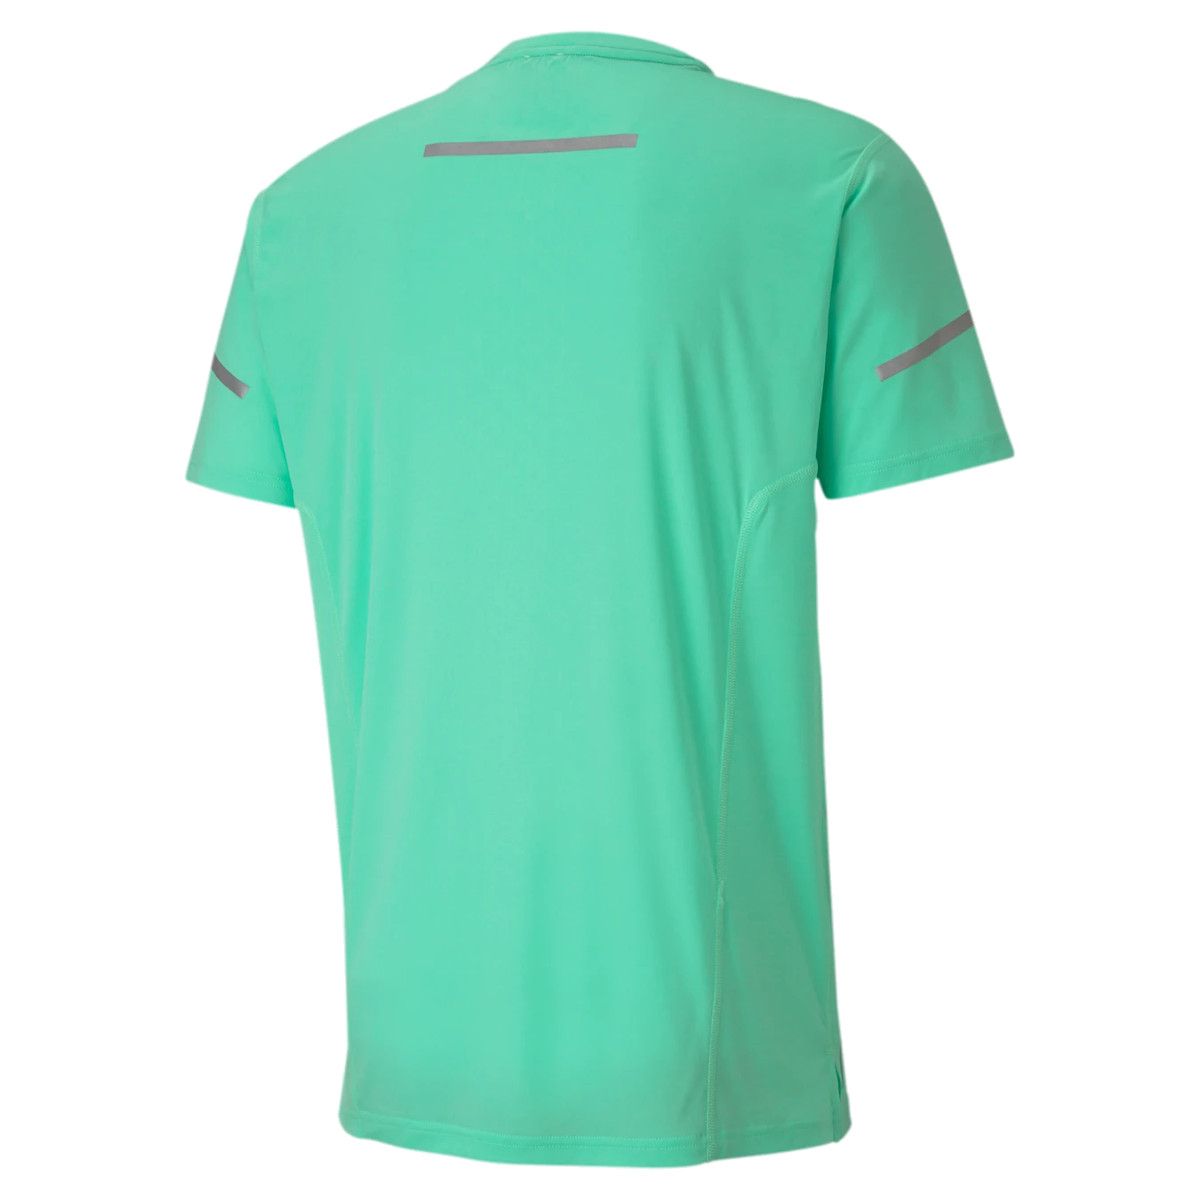 Puma Runner ID Thermo R Men's Running T-Shirt 518956-06